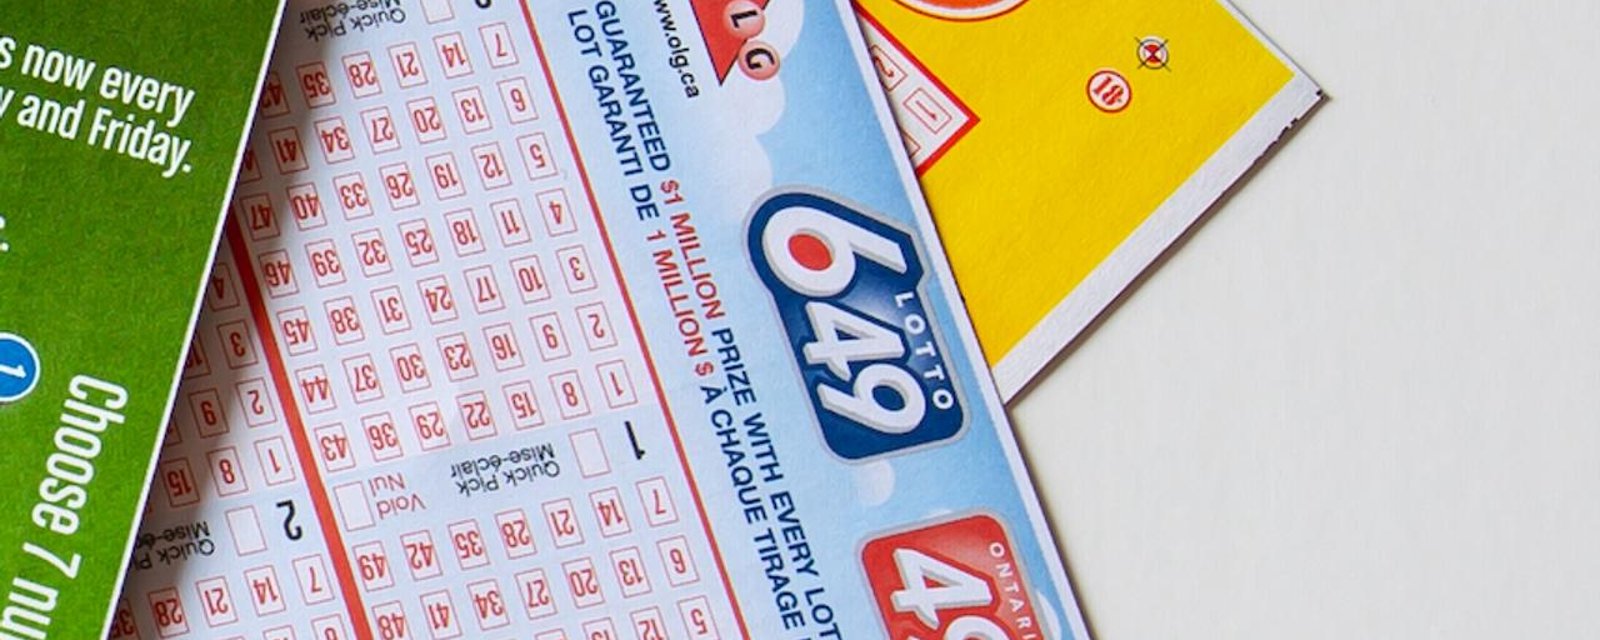 Un immense lot est en jeu au Lotto Max et au 6/49